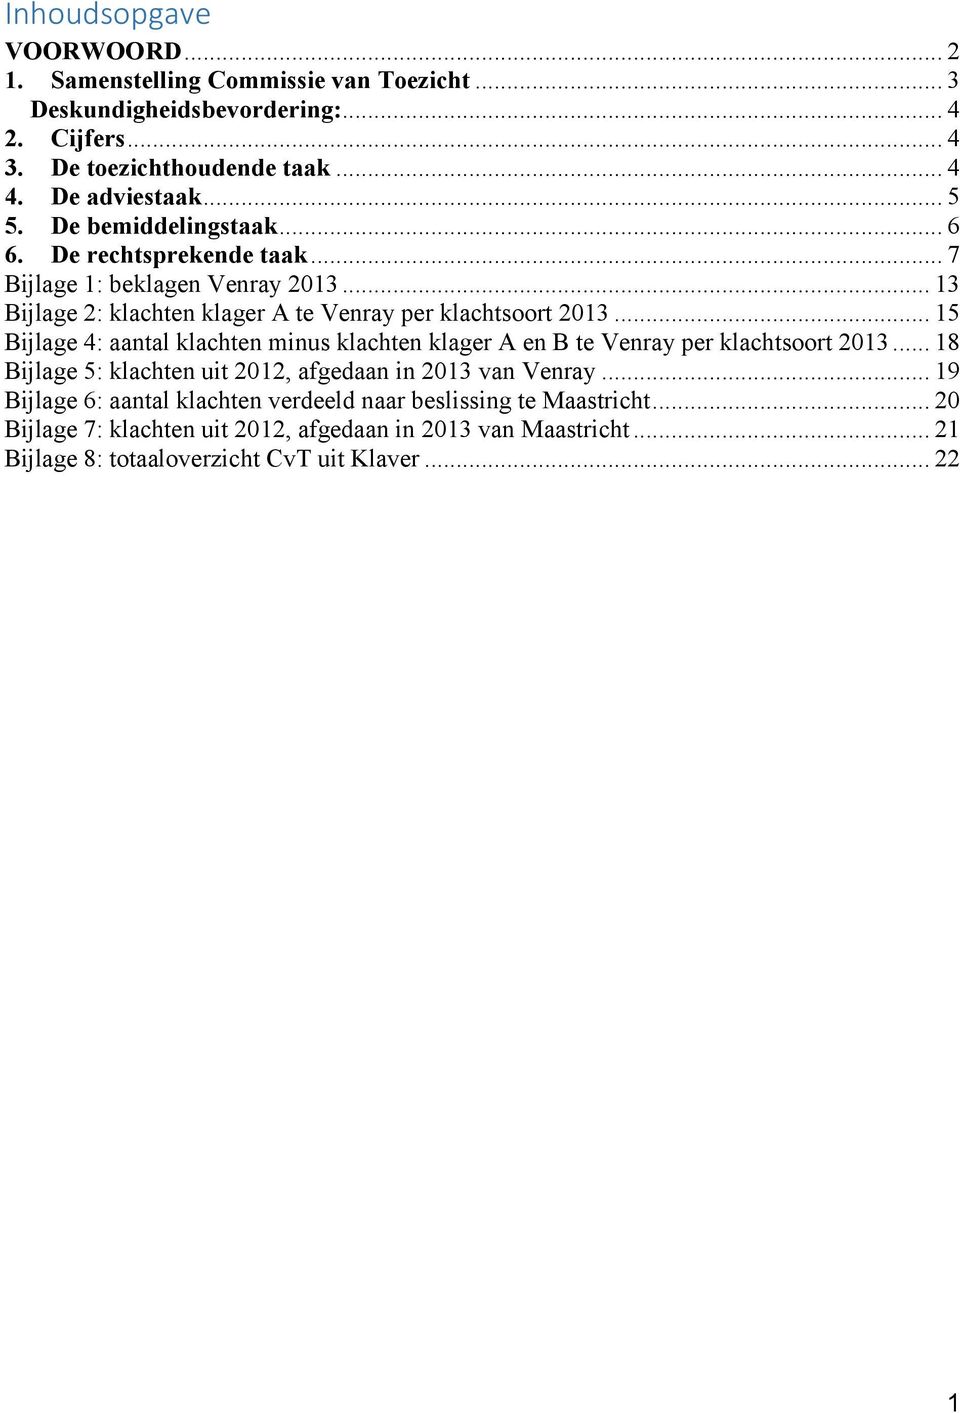 .. 15 Bijlage 4: aantal klachten minus klachten klager A en B te Venray per klachtsoort 2013... 18 Bijlage 5: klachten uit 2012, afgedaan in 2013 van Venray.